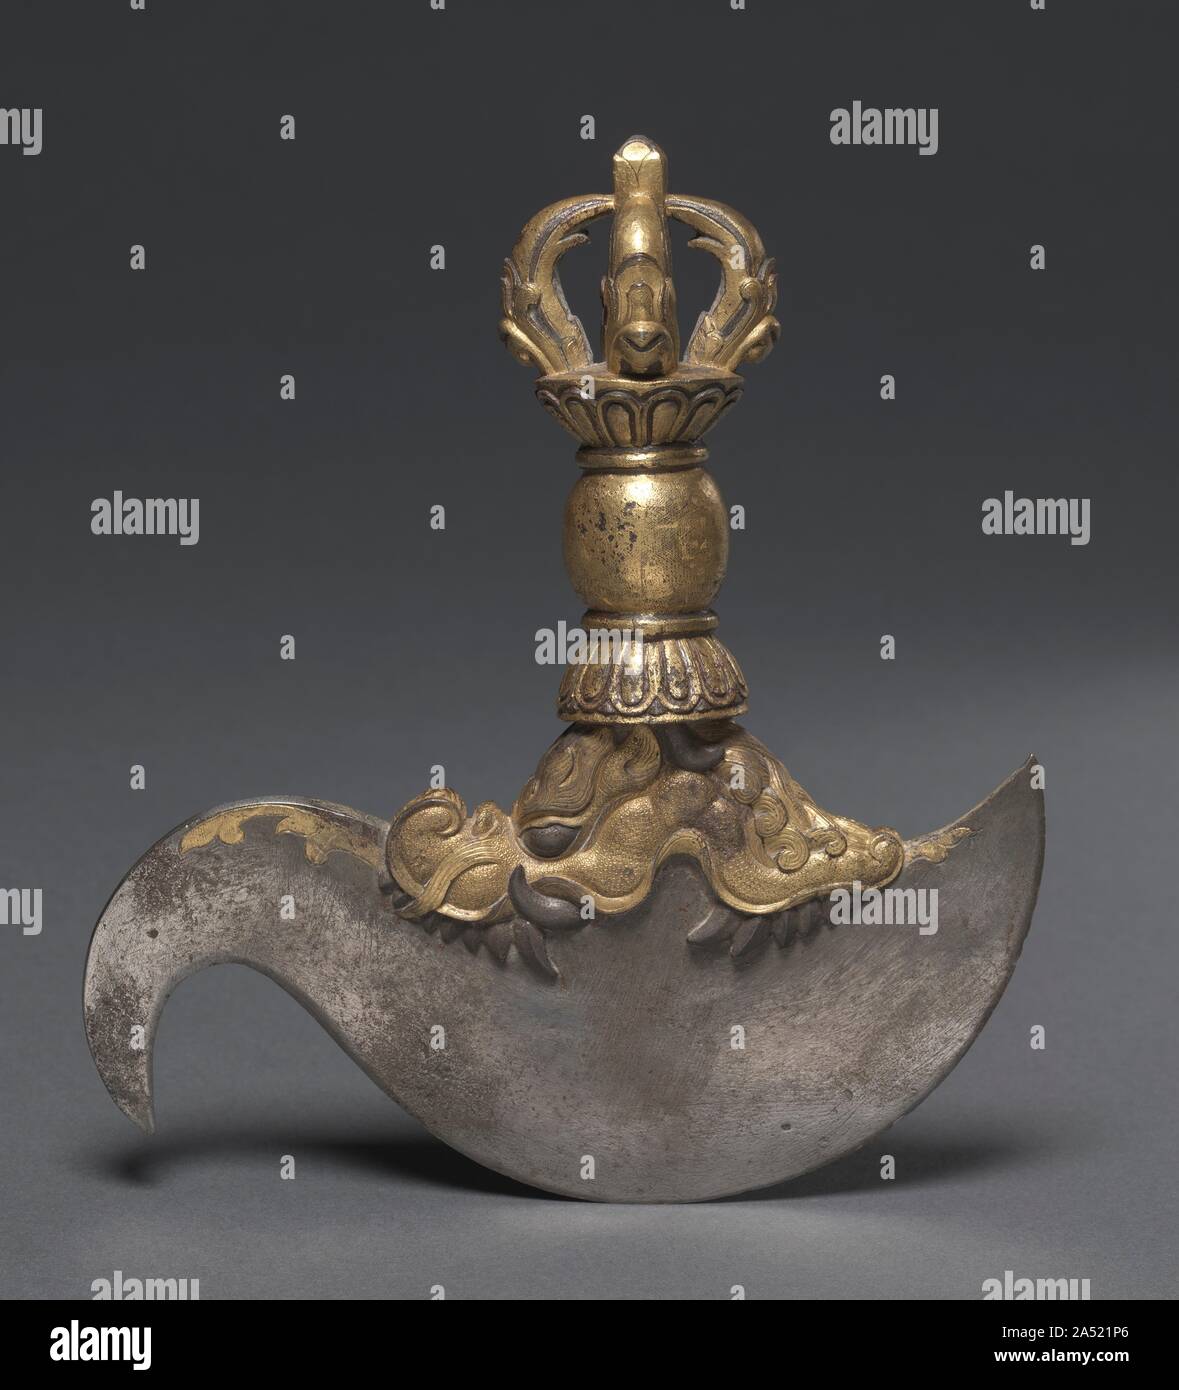 Ritual Häutungsmesser, C. 1407-1410. Zeremonielle Waffen wurde in tantrischen Ritualen verwendet Hindernisse zur Erleuchtung zu bekämpfen, wie Ignoranz und unkontrollierte Leidenschaften. In 1407, einen Hochrangigen tibetischen monastischen Patriarch besuchte der Kaiser der Ming Dynastie, bekannt als Yongle. Der Kaiser Yongle stellte ihn mit einer Reihe von Geschenken, die die Axt, Häutungsmesser, Räuchergefäß (1983.154) und vergoldeter Bronze virupa (1972.69) erscheint ein Teil gewesen zu sein, da die Skulptur und die ax tragen seine Identifizierung Inschrift in einer Kartusche. Imperial chinesischen Verarbeitung ist in der üppigen Rendering festgestellt Stockfoto